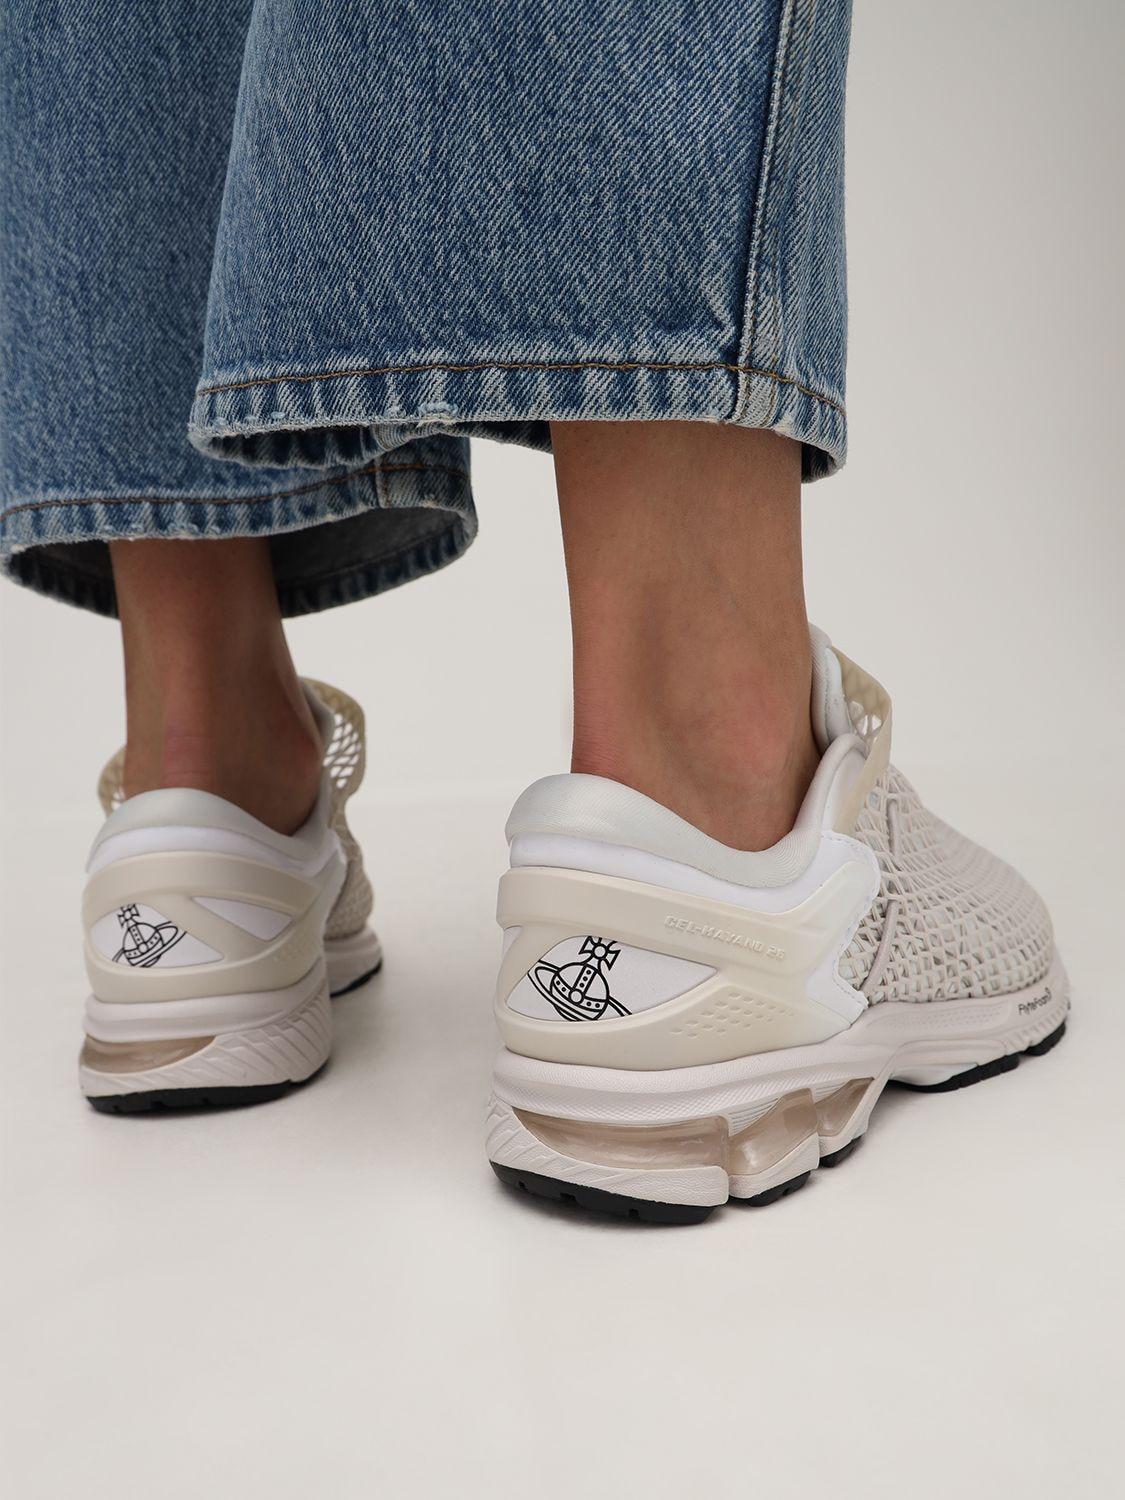 Asics Vivienne Westwood Gel-kayano 26 Sneakers in White | Lyst